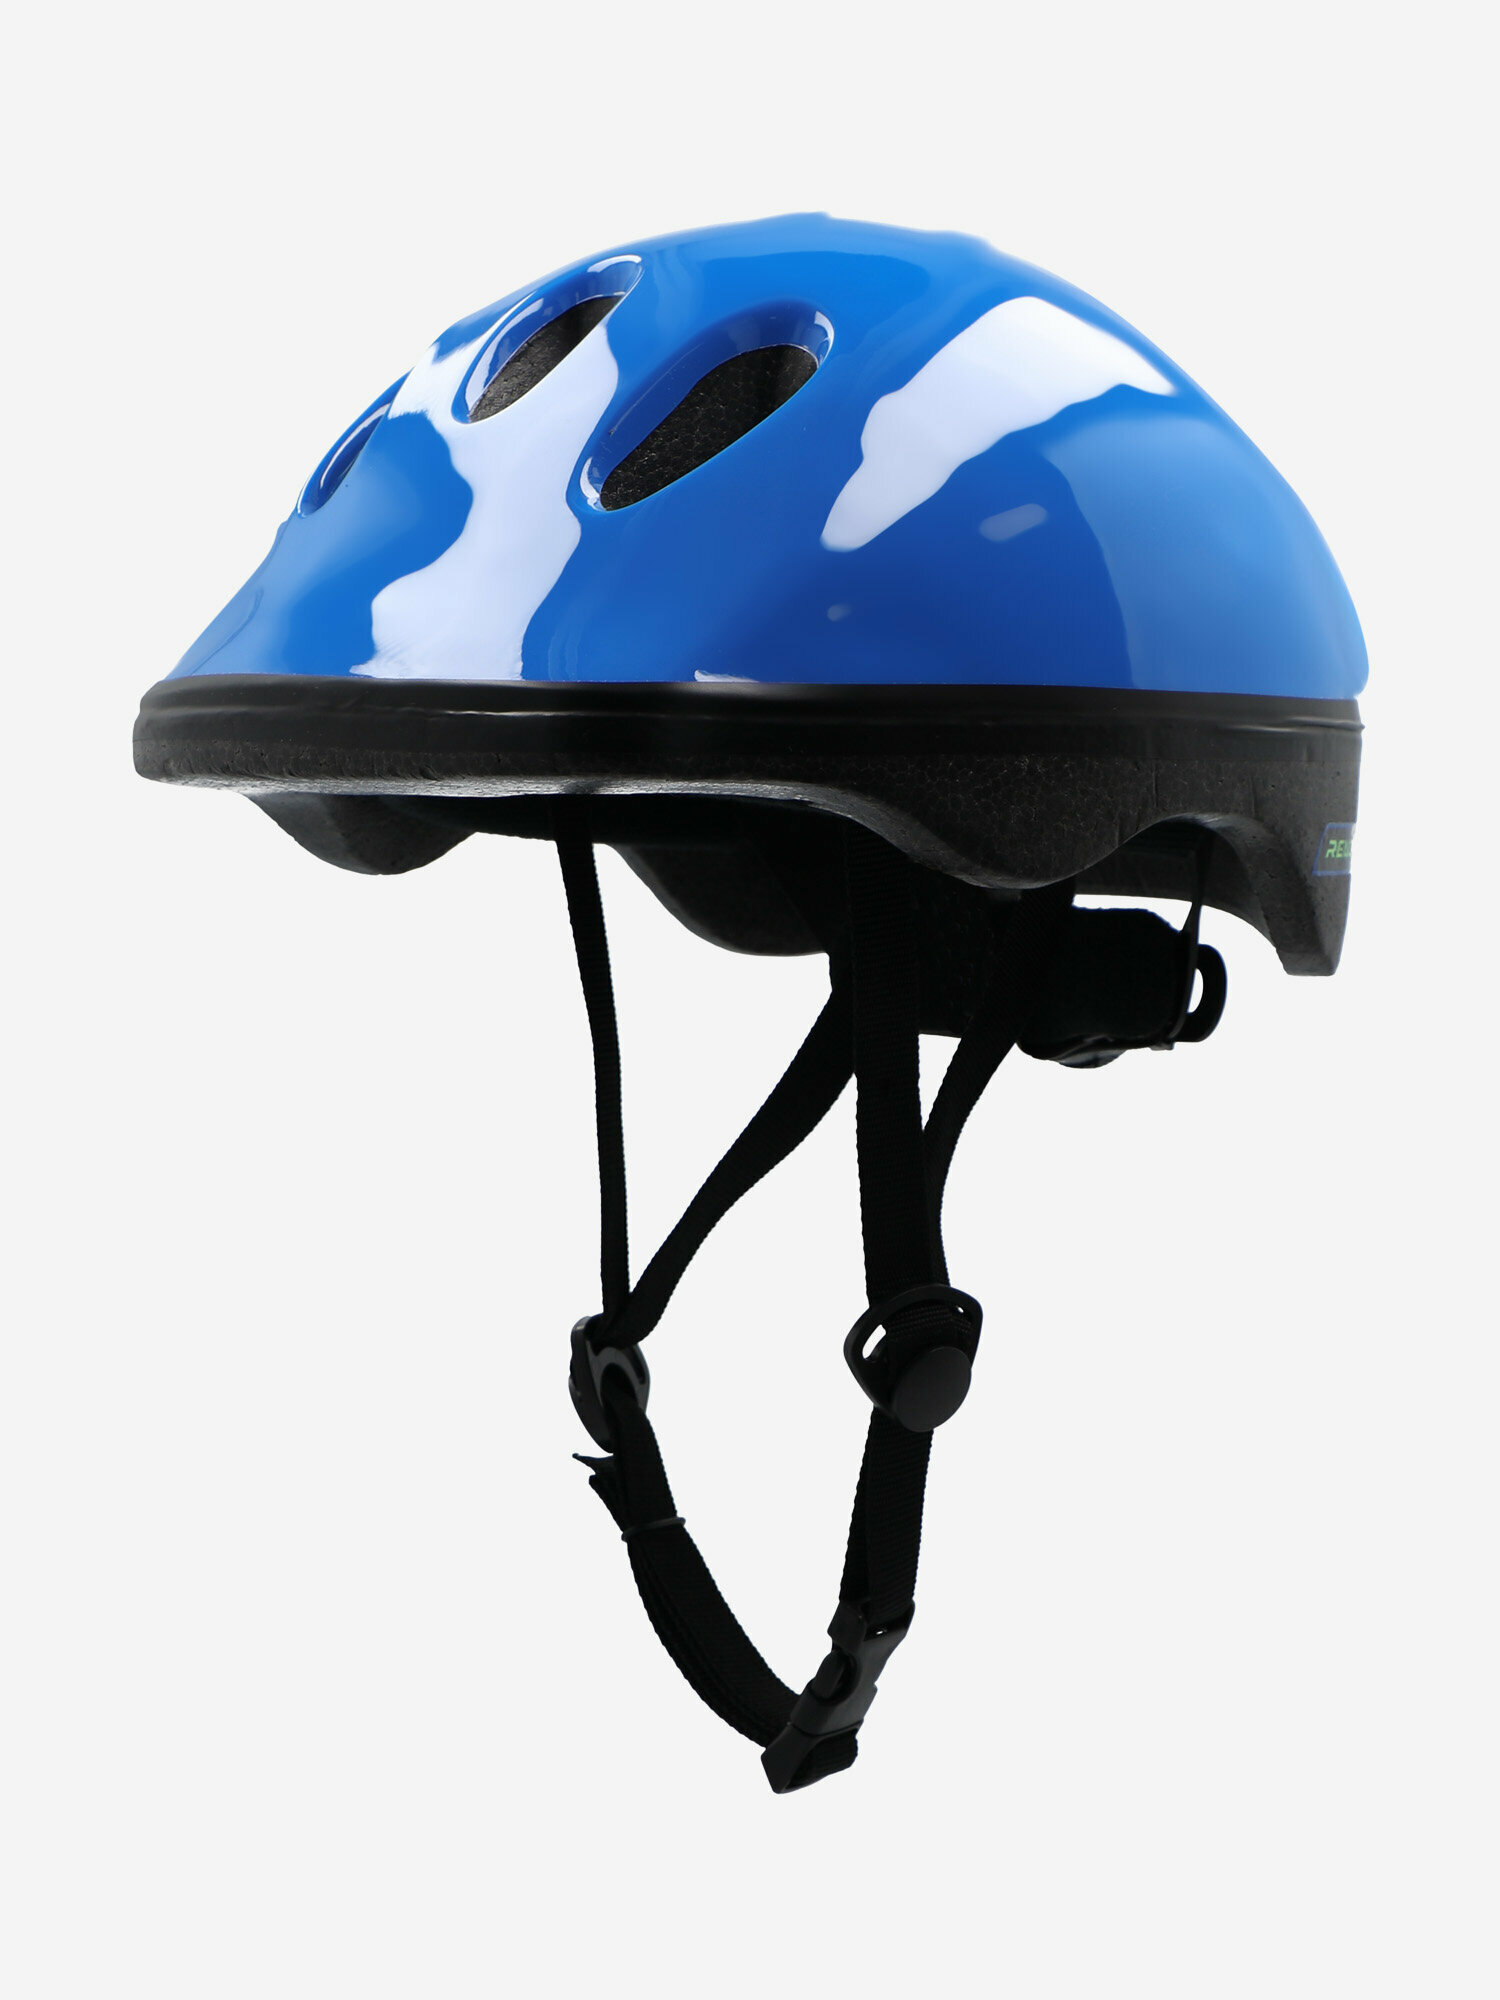 Шлем для мальчиков Reaction Rainbow Синий; RU: 50-54, Ориг: S